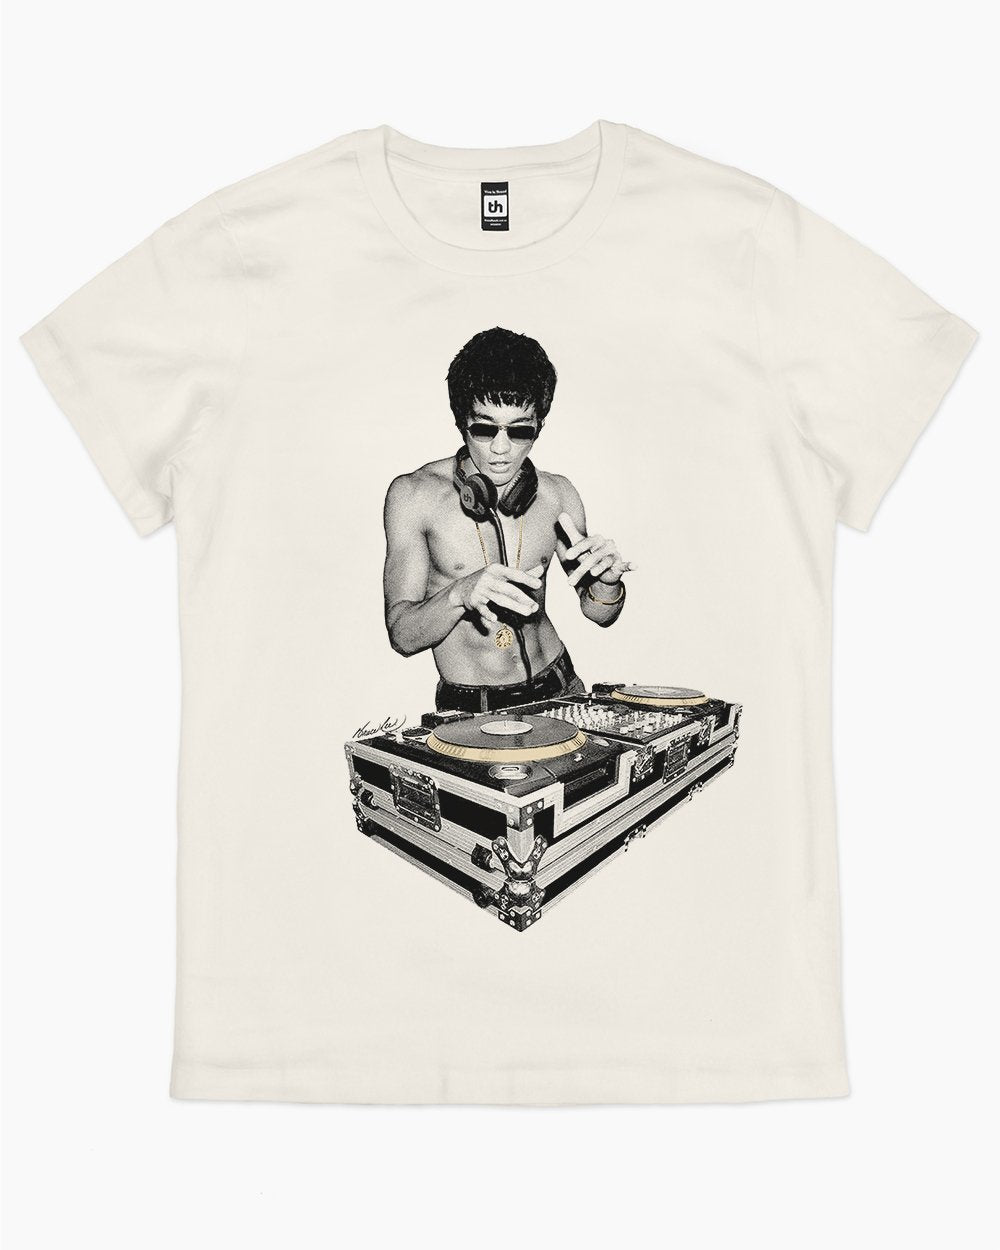 DJ Bruce Lee T-Shirt | Official Bruce Lee Merch NZ | Threadheads